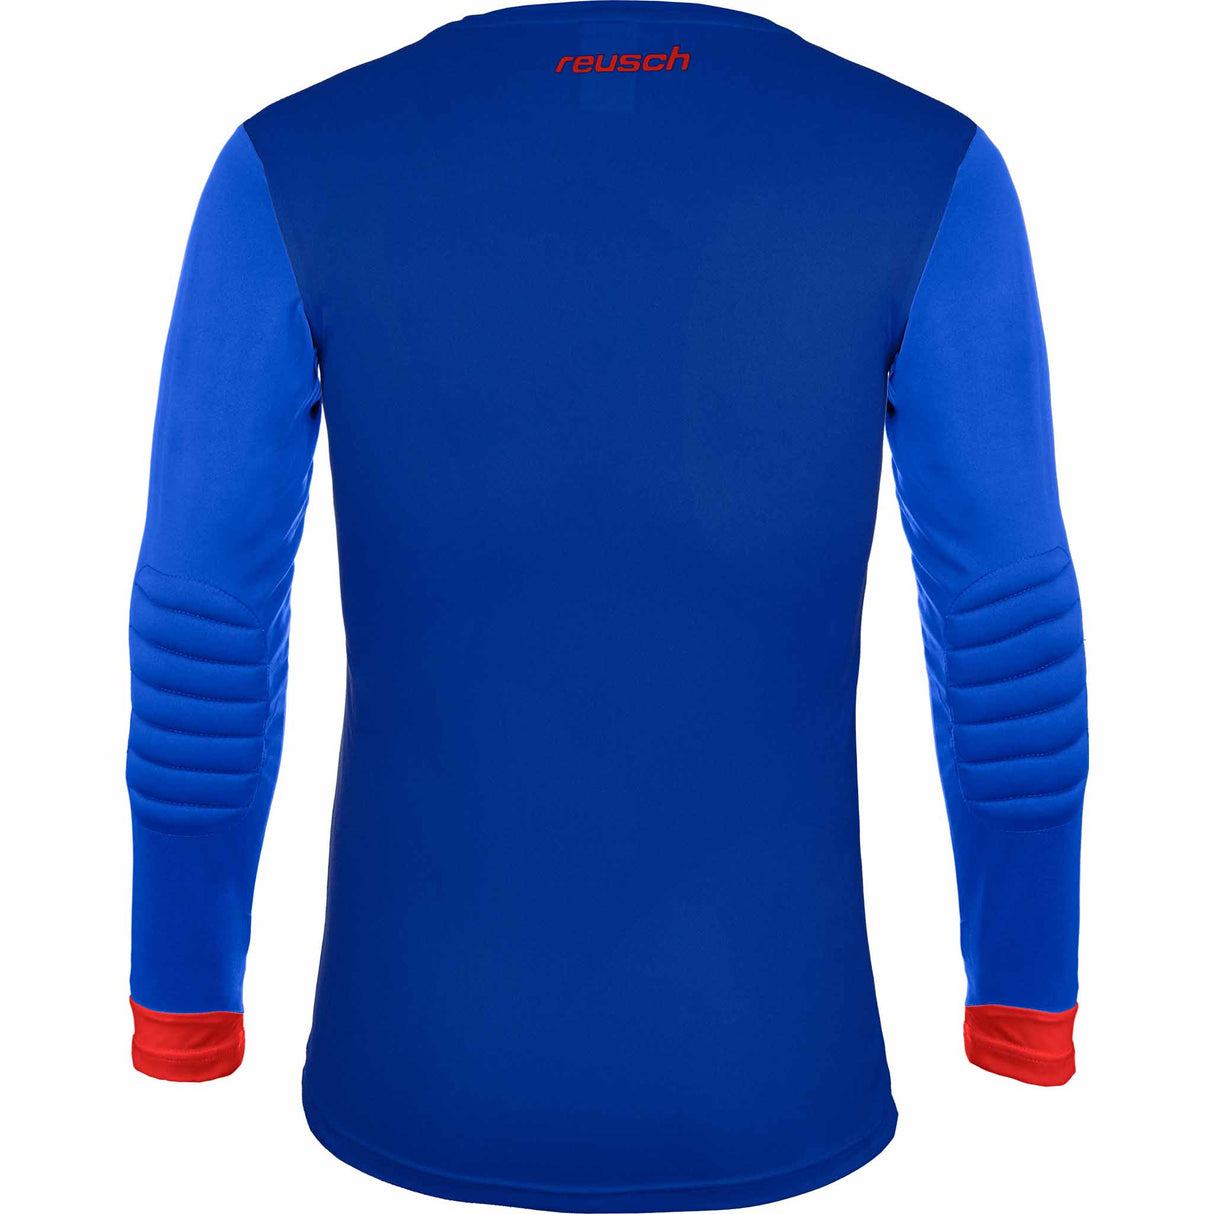 Reusch Match II Padded Jersey chandail de gardien de but de soccer - Bleu / Rouge